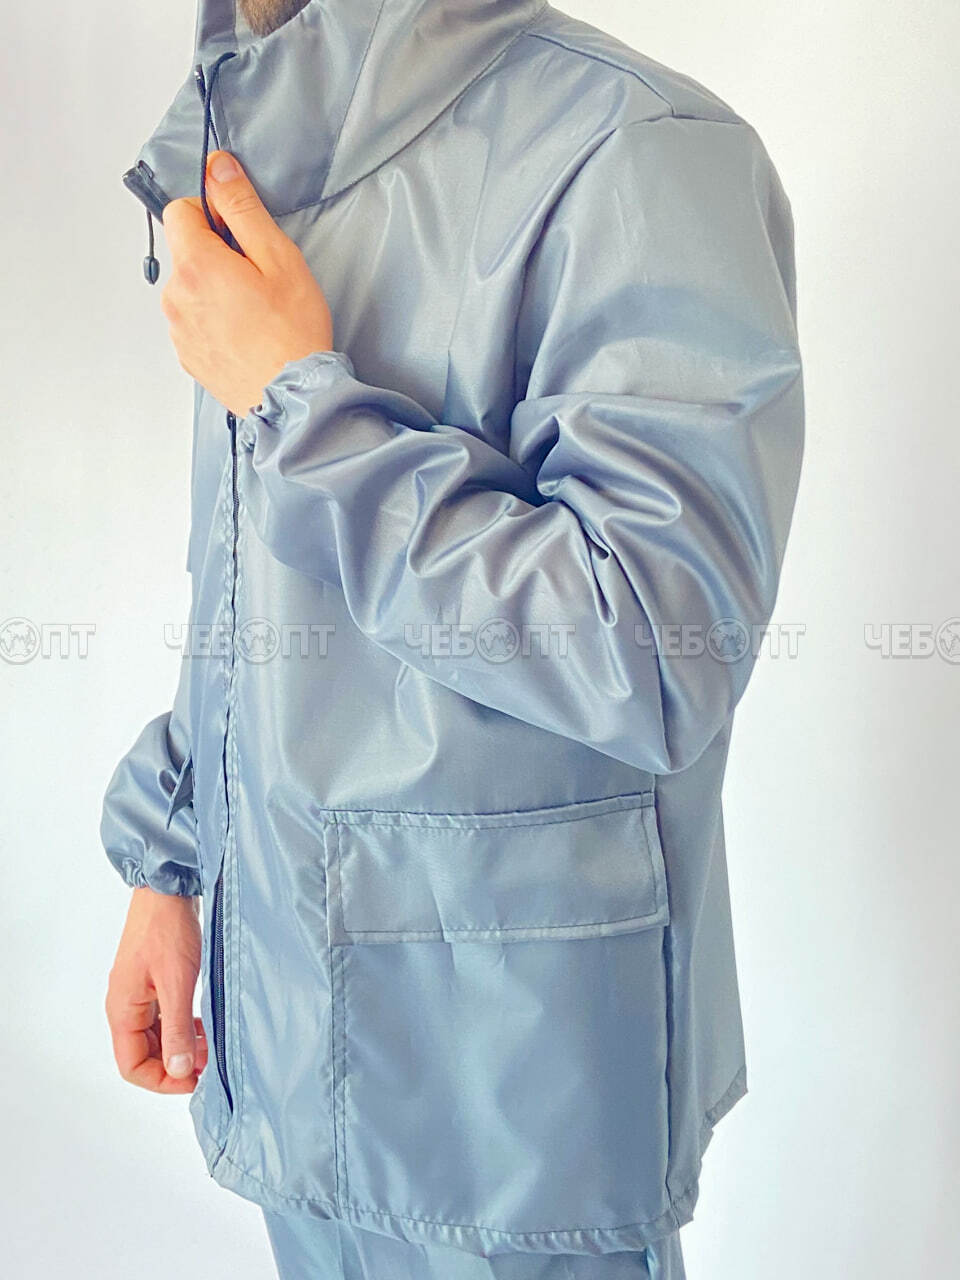 Костюм-дождевик (куртка, брюки),ЧЕБПРО,размер 44-46,100% полиэстер, Арт. ДожКост/серый, МПС [15] СобПр. ЧЕБОПТ.